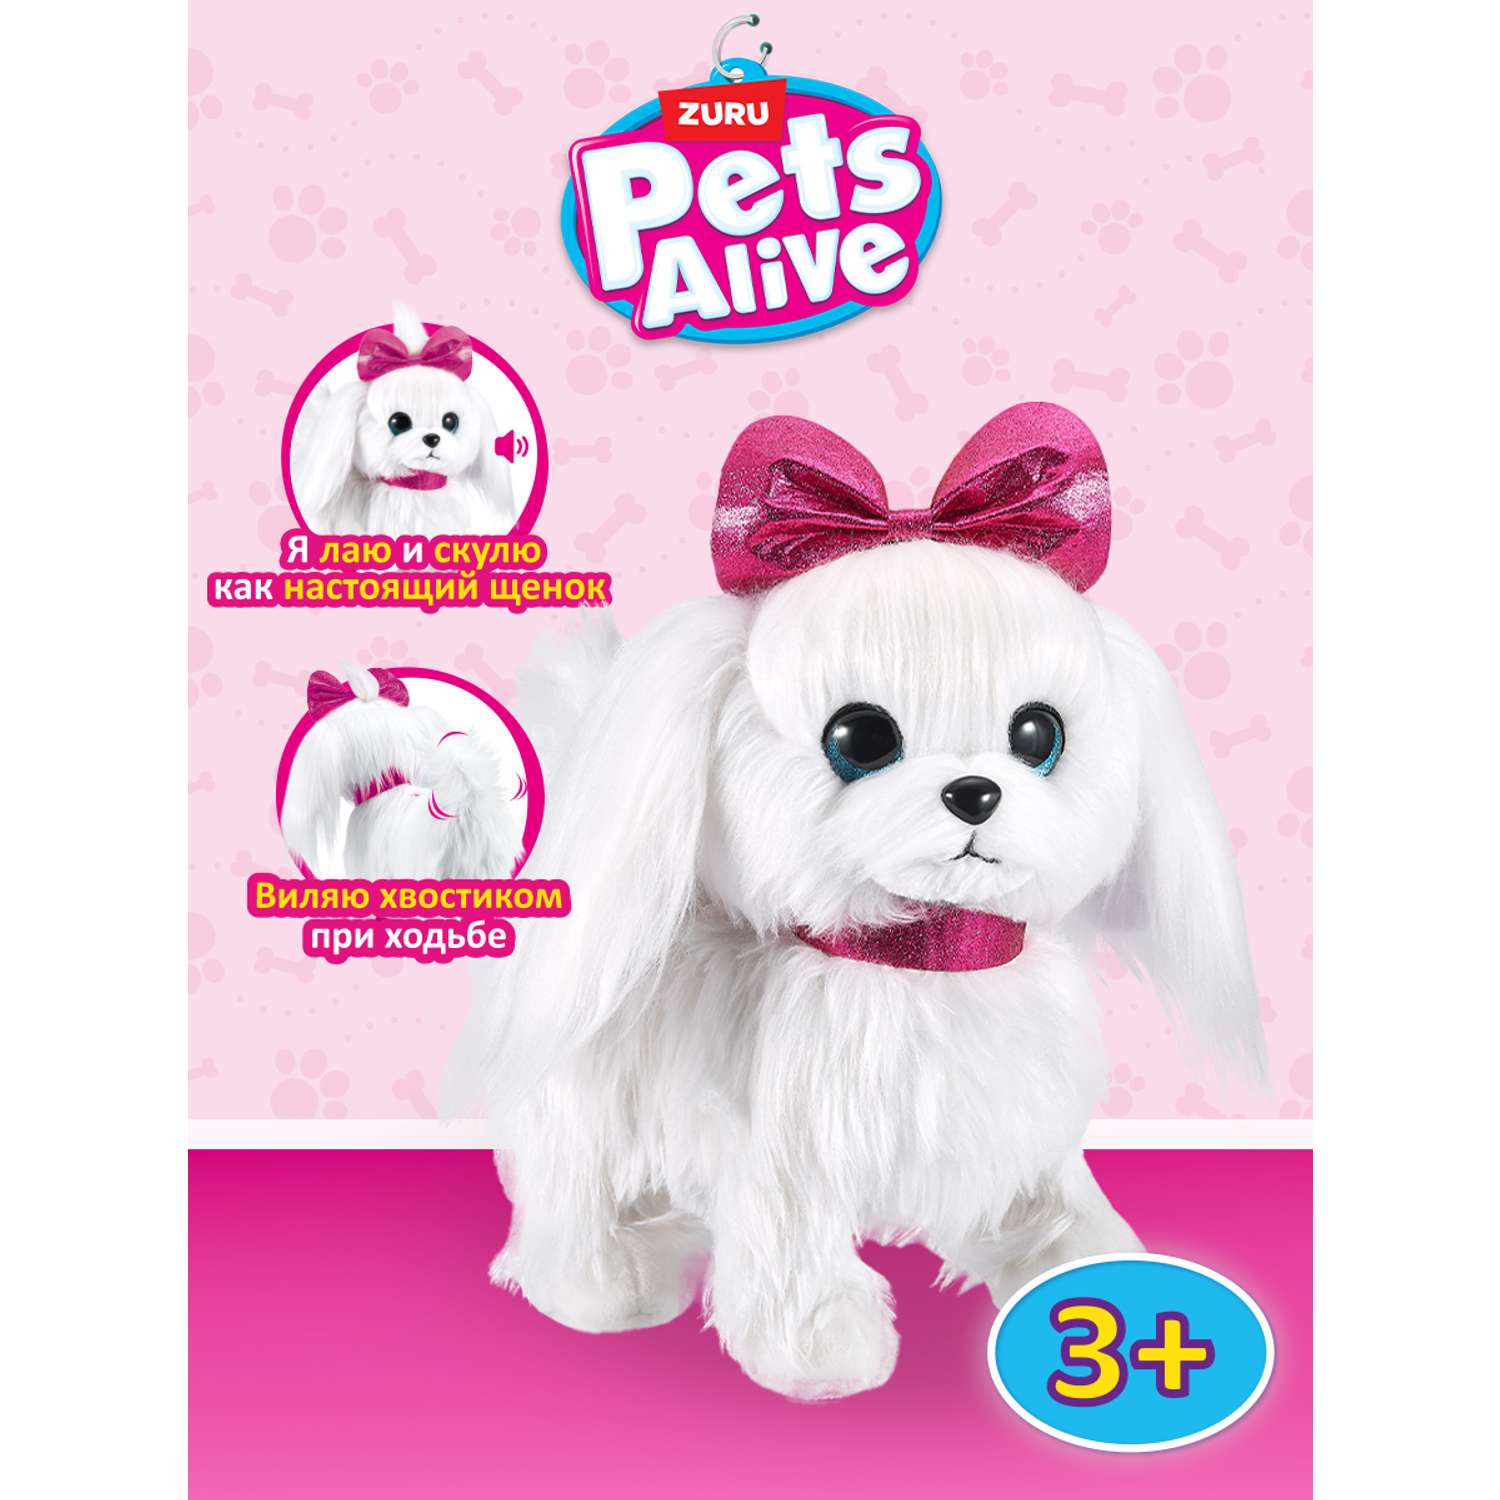 Игрушка Zuru Pets Alive щенок на поводке интерактивная 9531 - фото 1